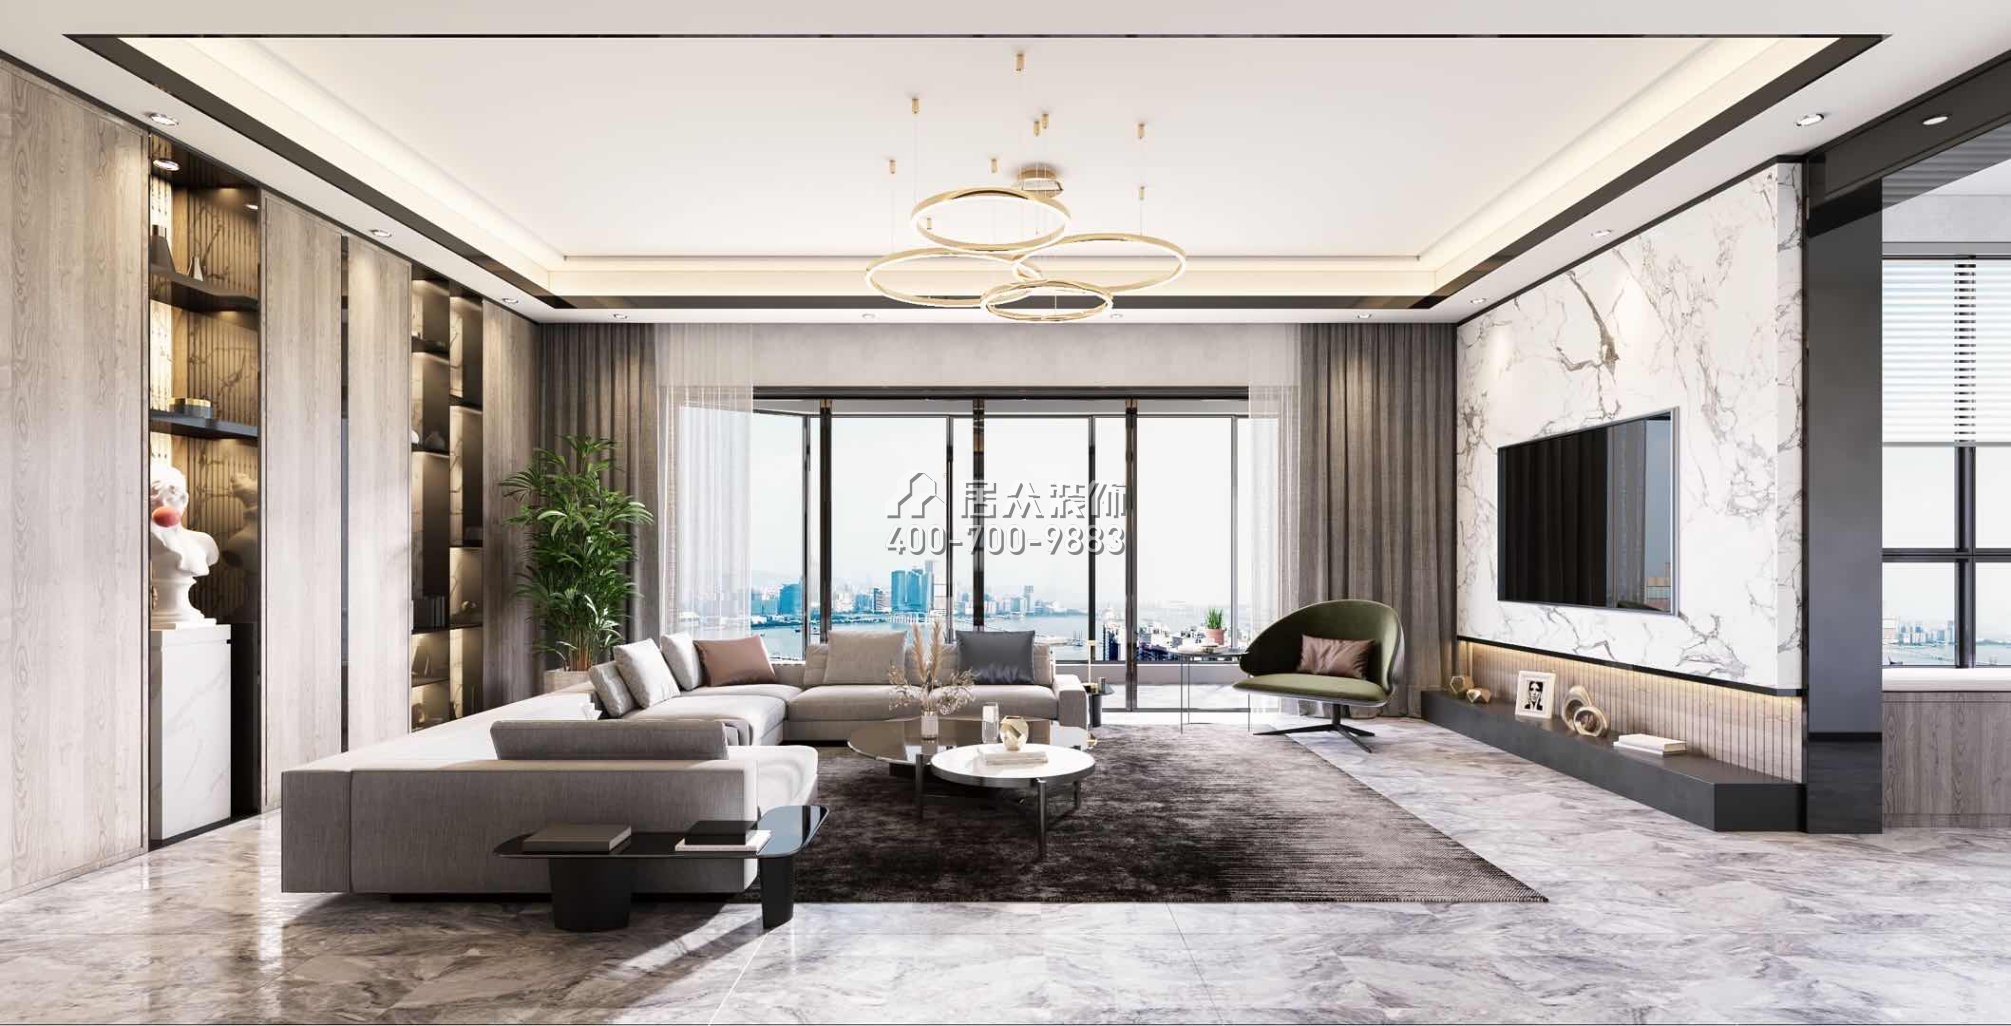 華發首府143平方米現代簡約風格平層戶型客廳裝修效果圖